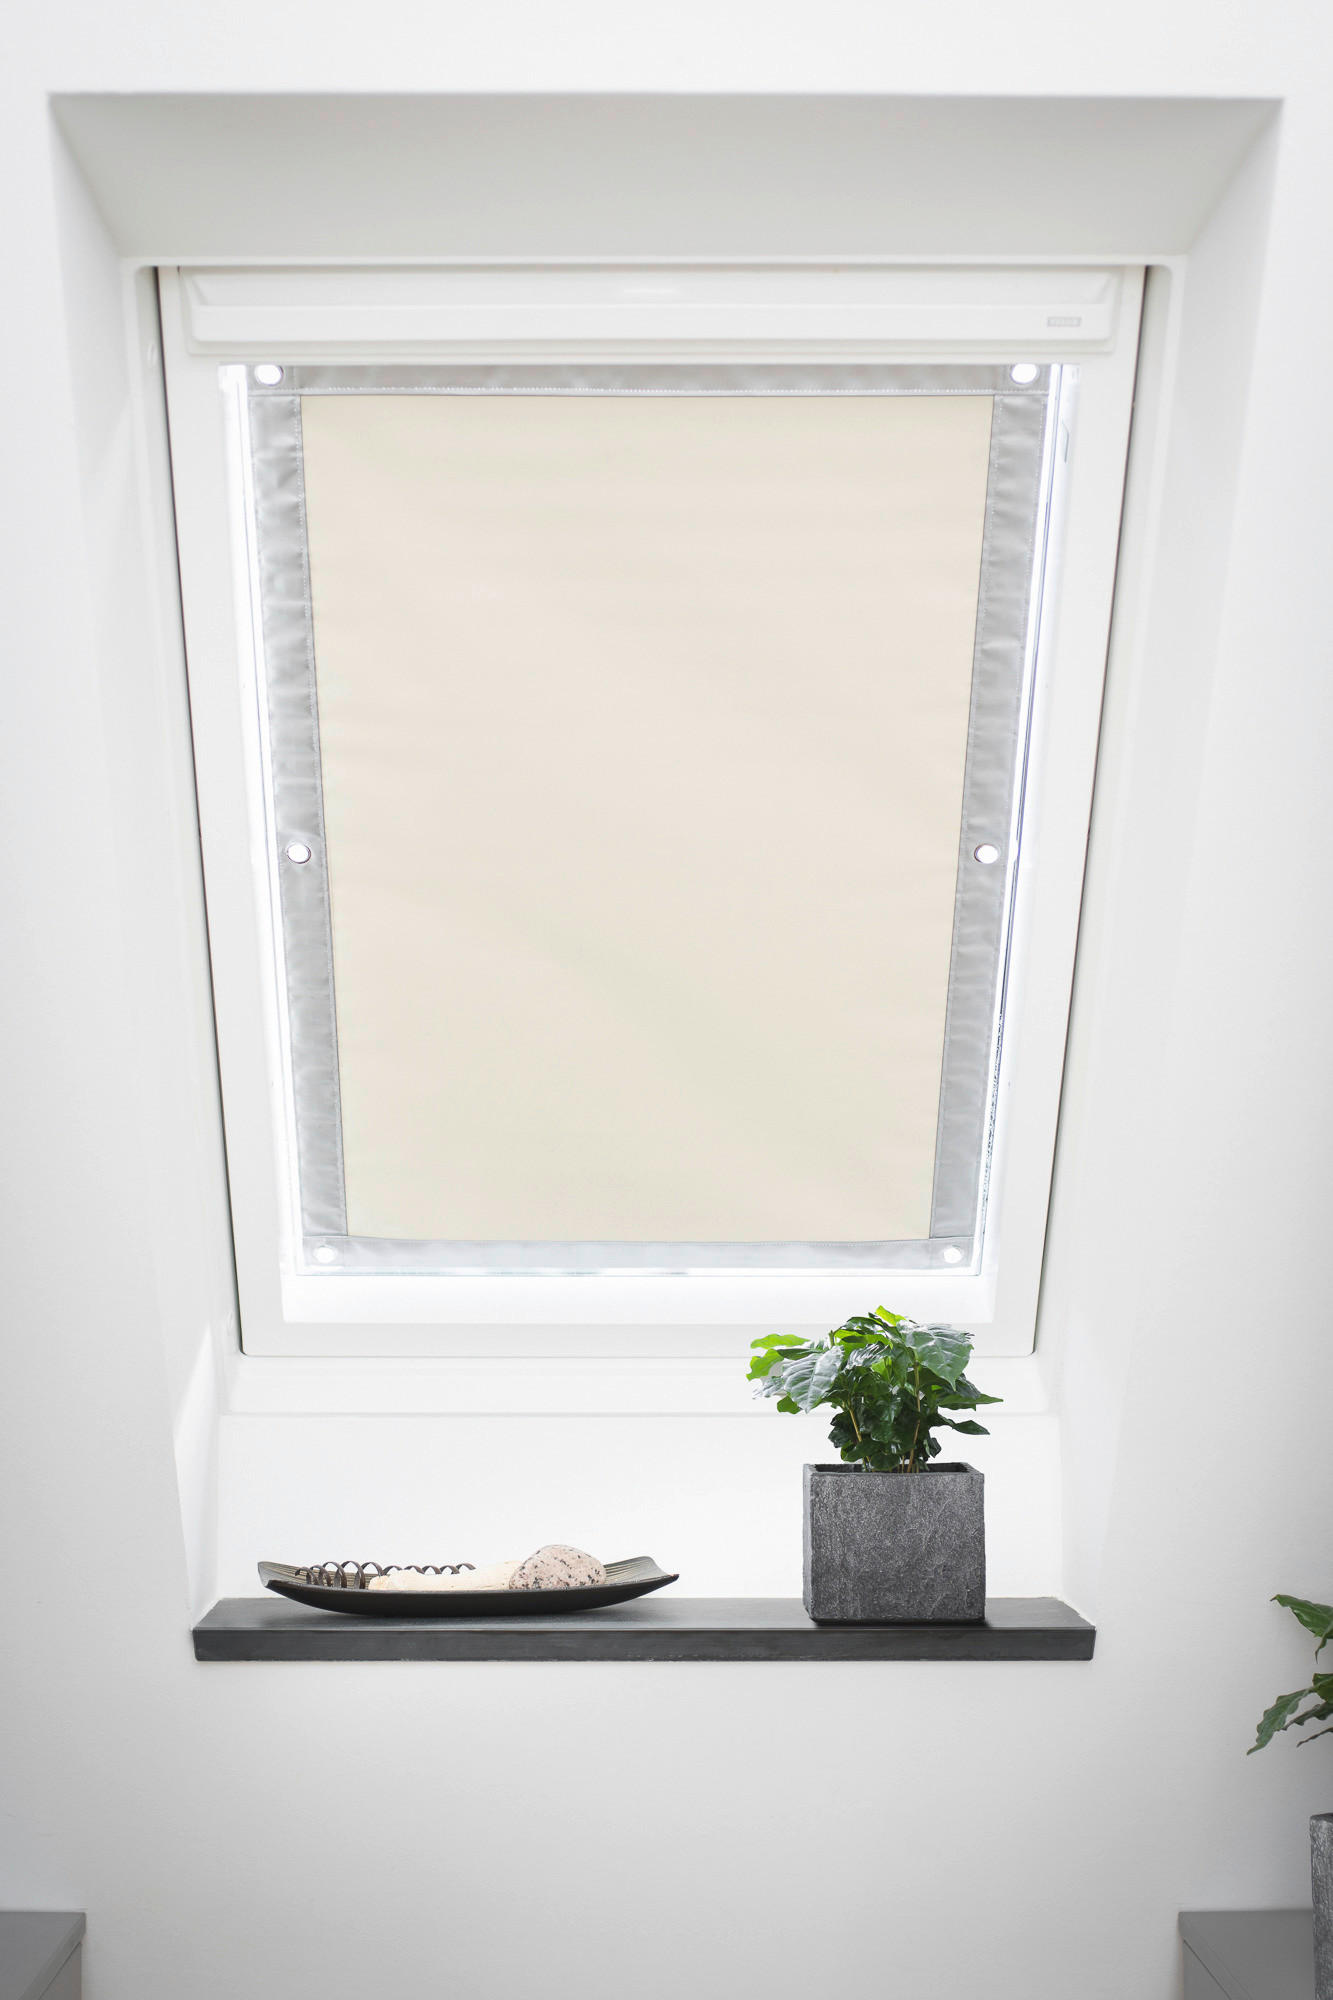 Dachfenster-Sonnenschutz VD beige B/L: ca. 36x51,5 cm